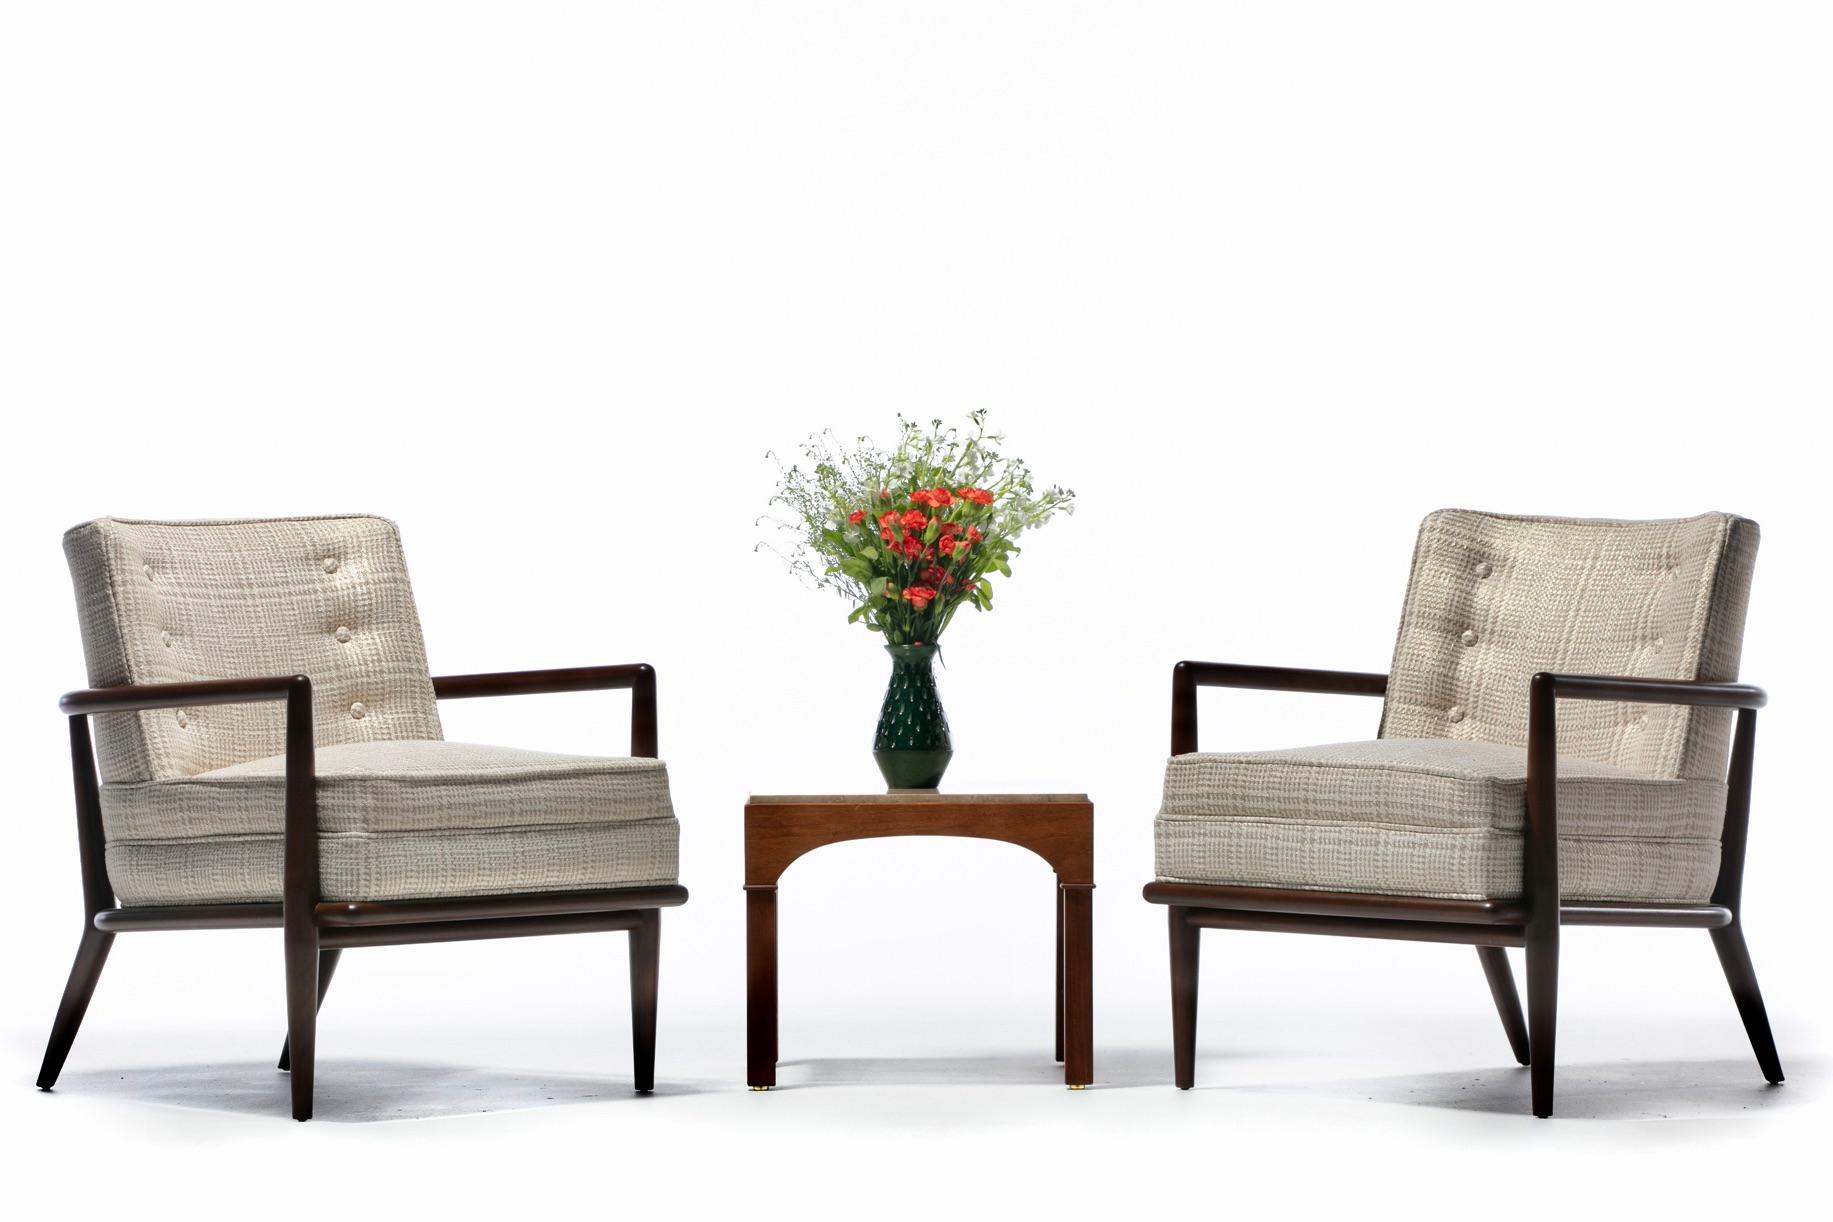 Ein Paar Loungesessel aus Nussbaumholz aus den 1950er Jahren, entworfen von T. H. Robsjohn-Gibbings und hergestellt von Widdicomb, neu und professionell aufgearbeitet und mit dem Designer-Stoff Romo gepolstert. Sexy und raffiniert. Klassische